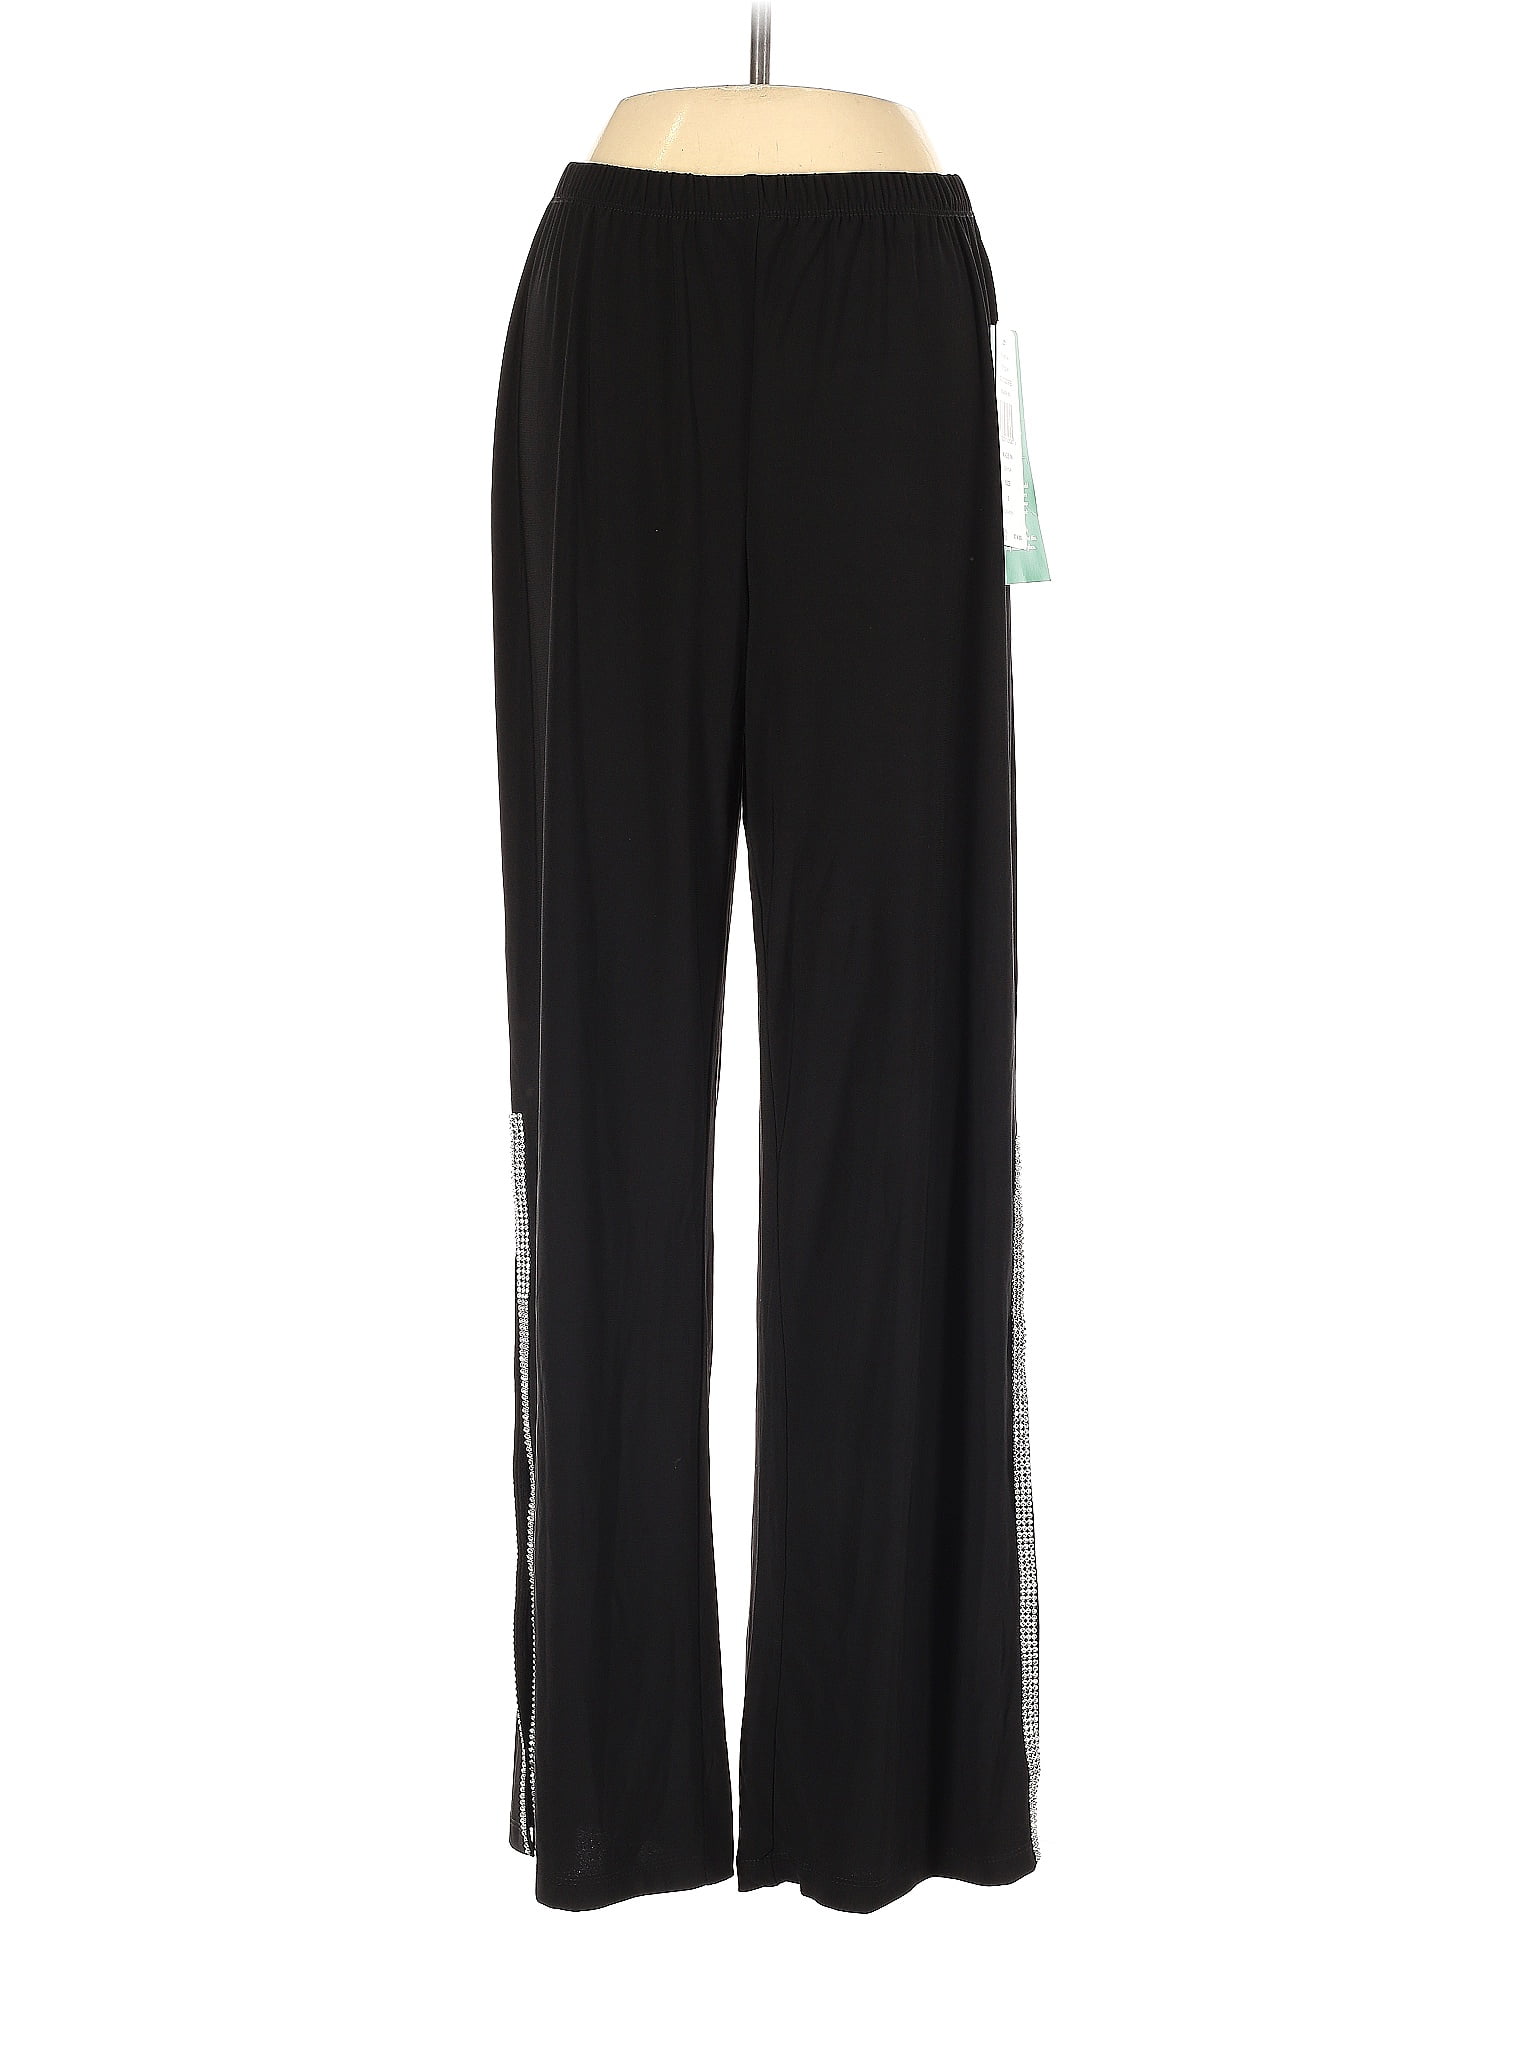 MSK Black Dress Pants Size S - 66% off | thredUP